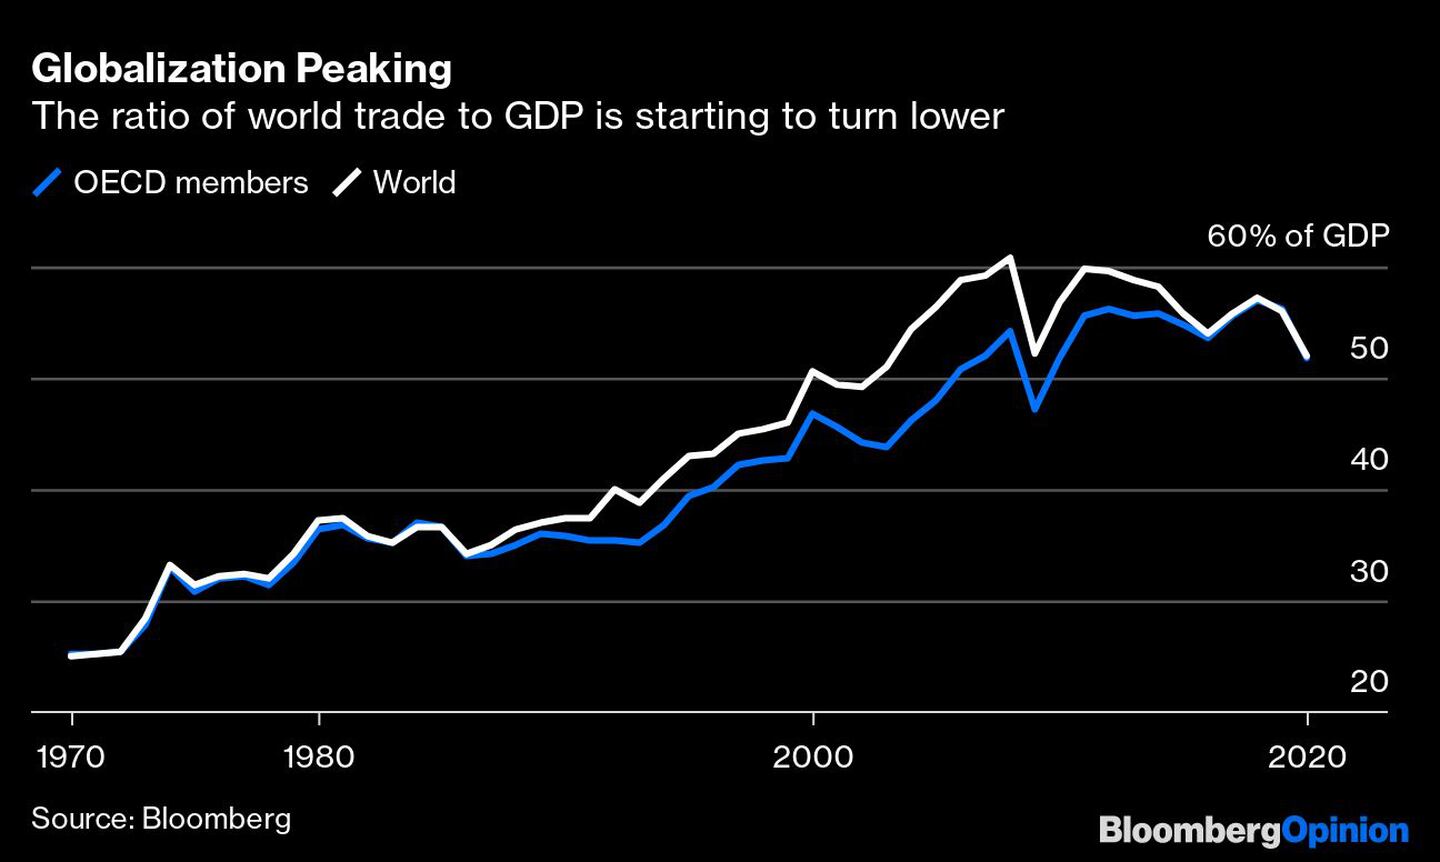  La relación entre el comercio mundial y el PIB empieza a bajardfd